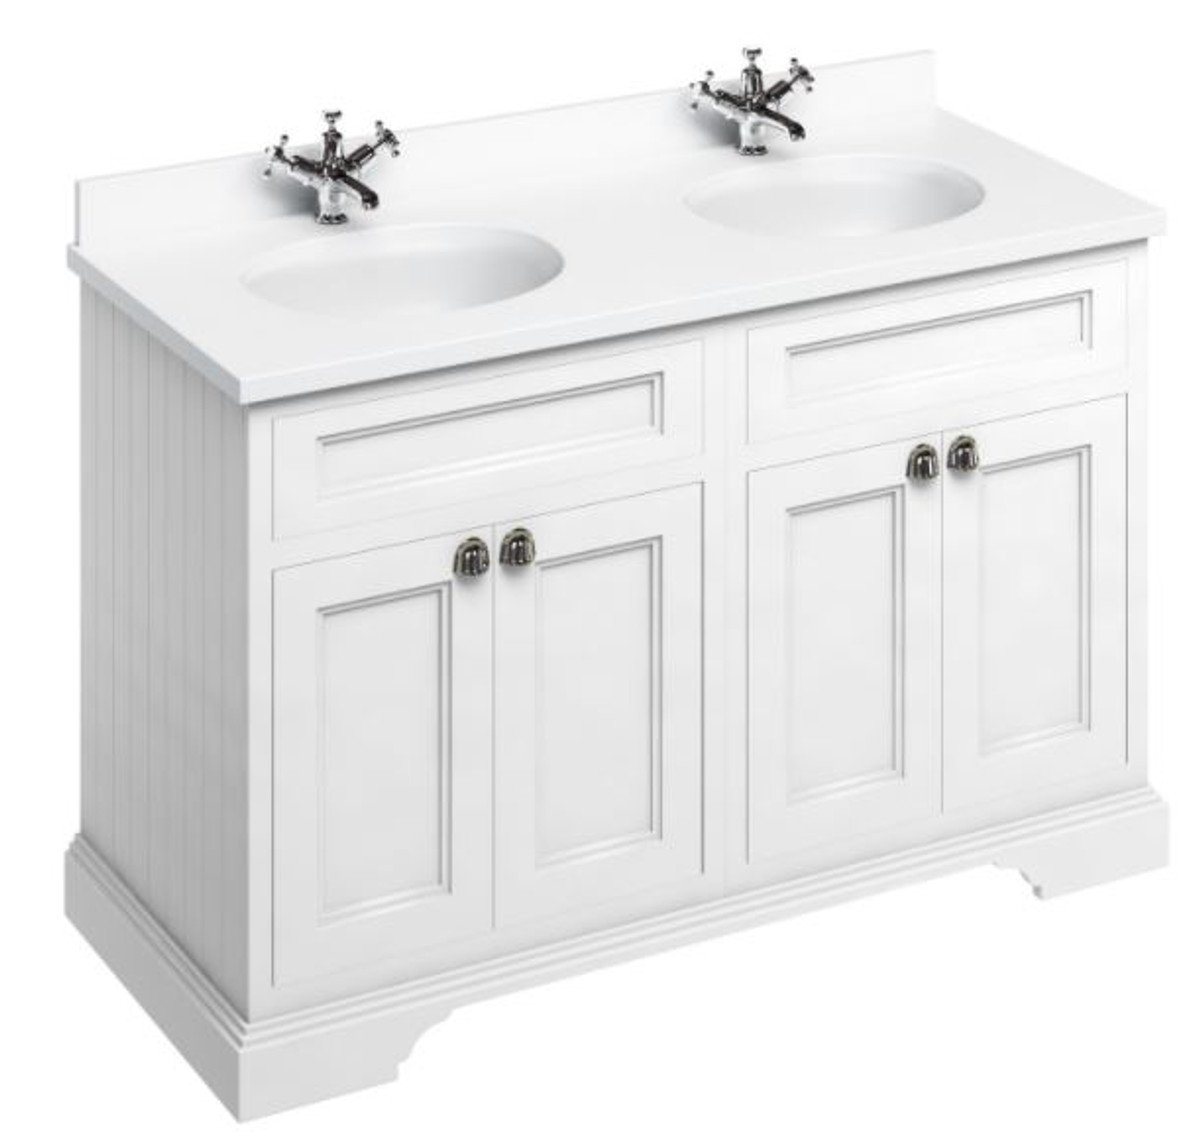 Casa Padrino Doppelwaschtisch Doppel Waschschrank / Waschtisch mit Marmorplatte und 4 Türen 130 x 55 x H. 93 cm von Casa Padrino